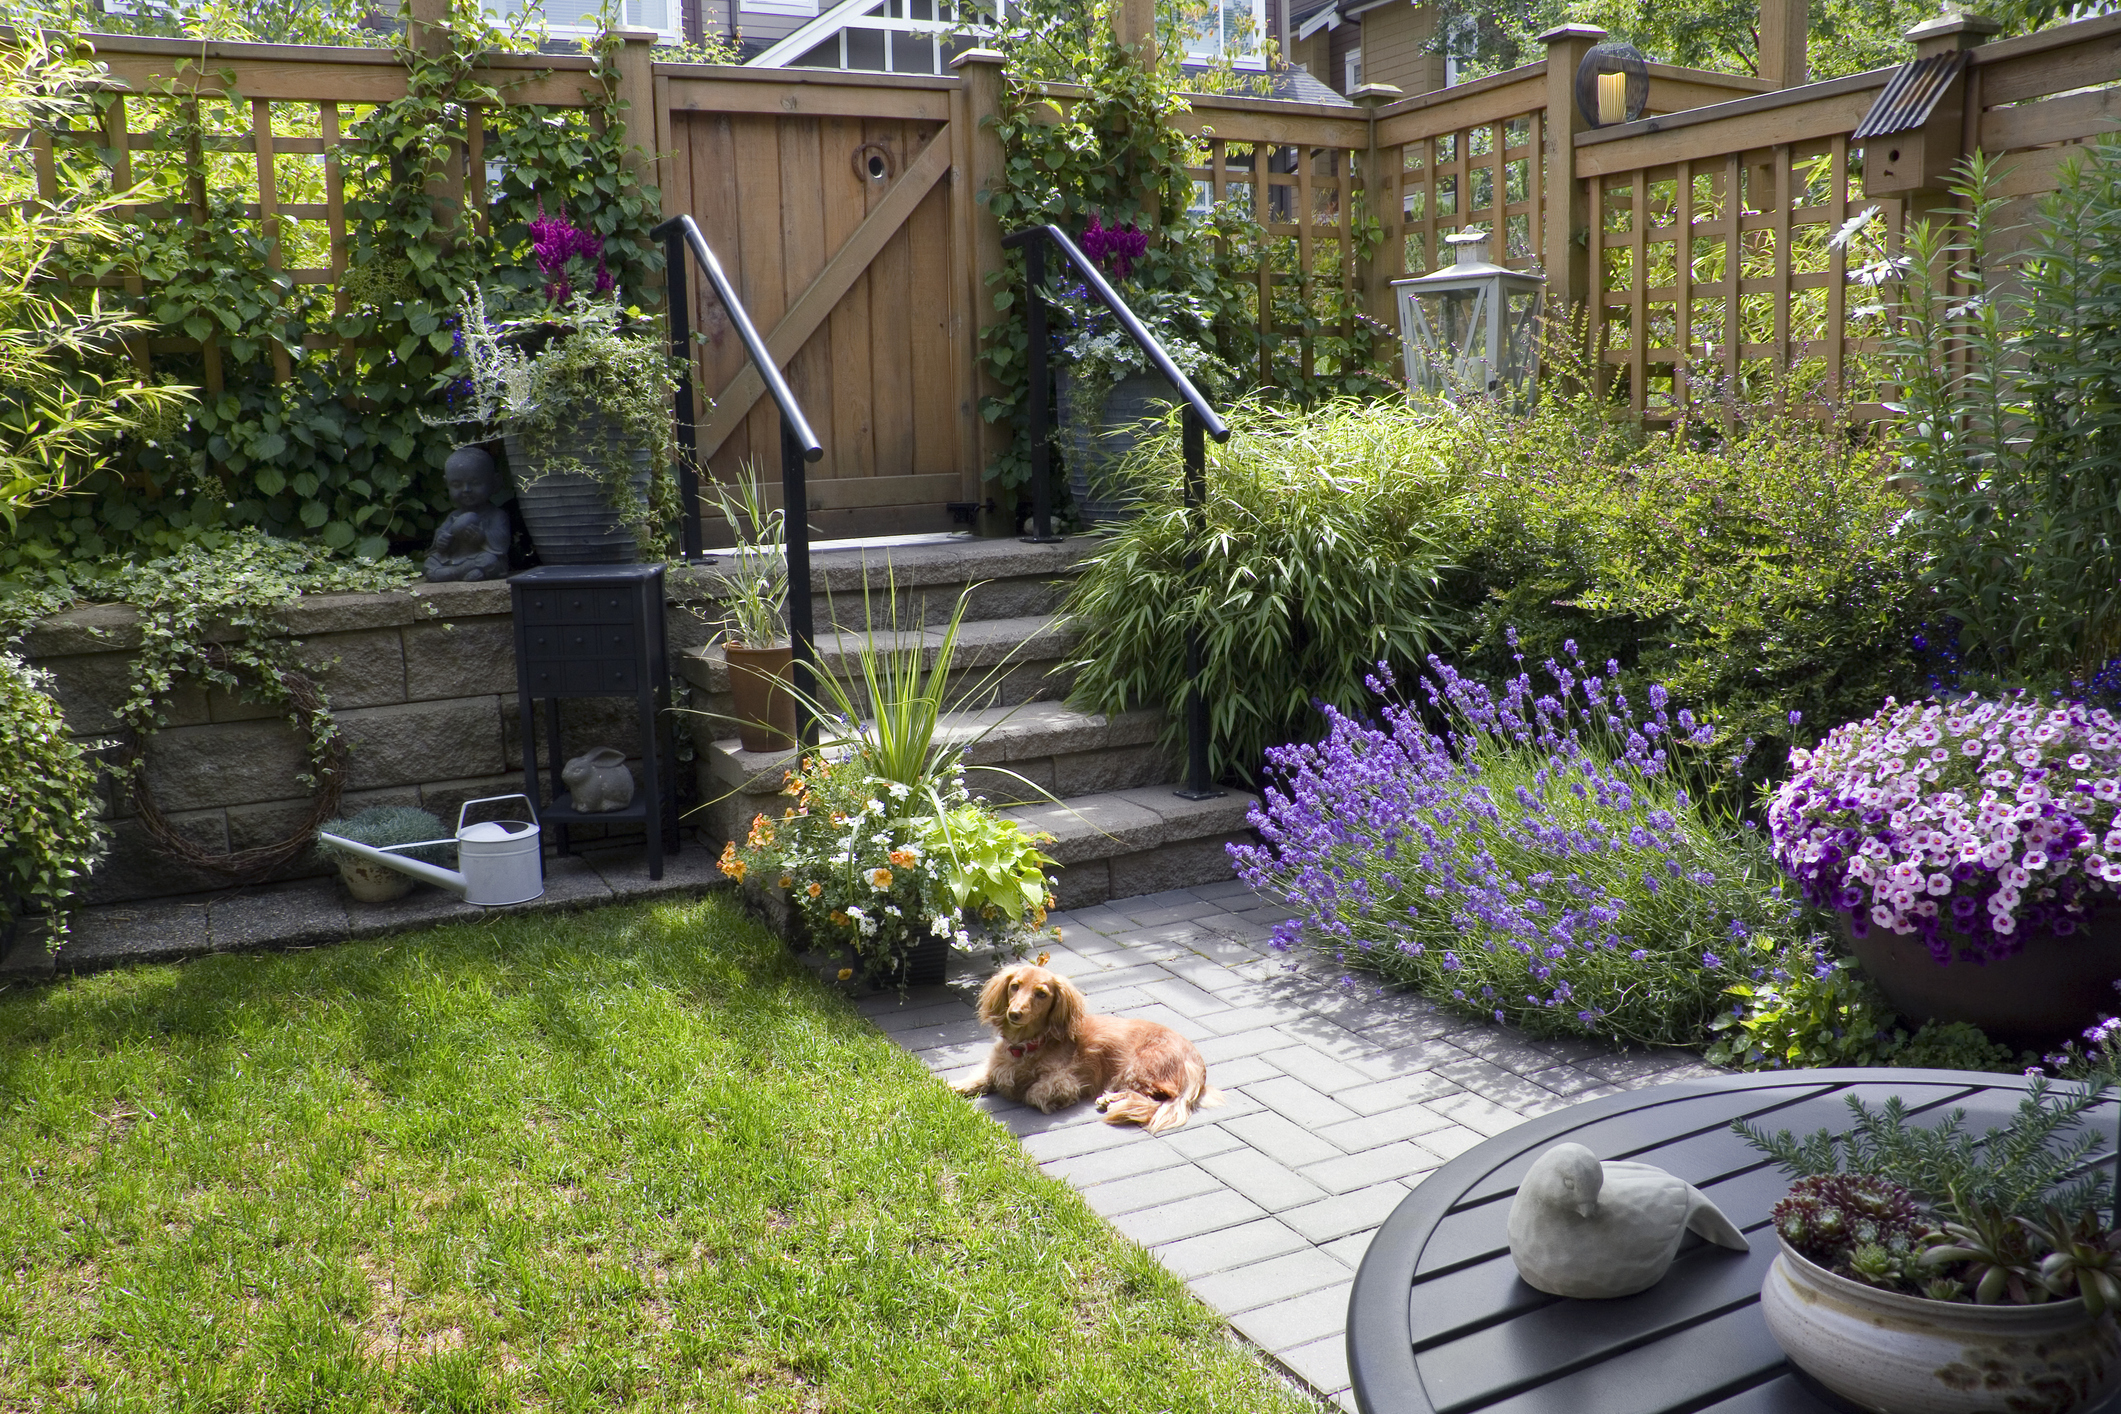 Hund liegt im Garten auf dem Pflaster und ist umgeben von viel Grün und Blumen